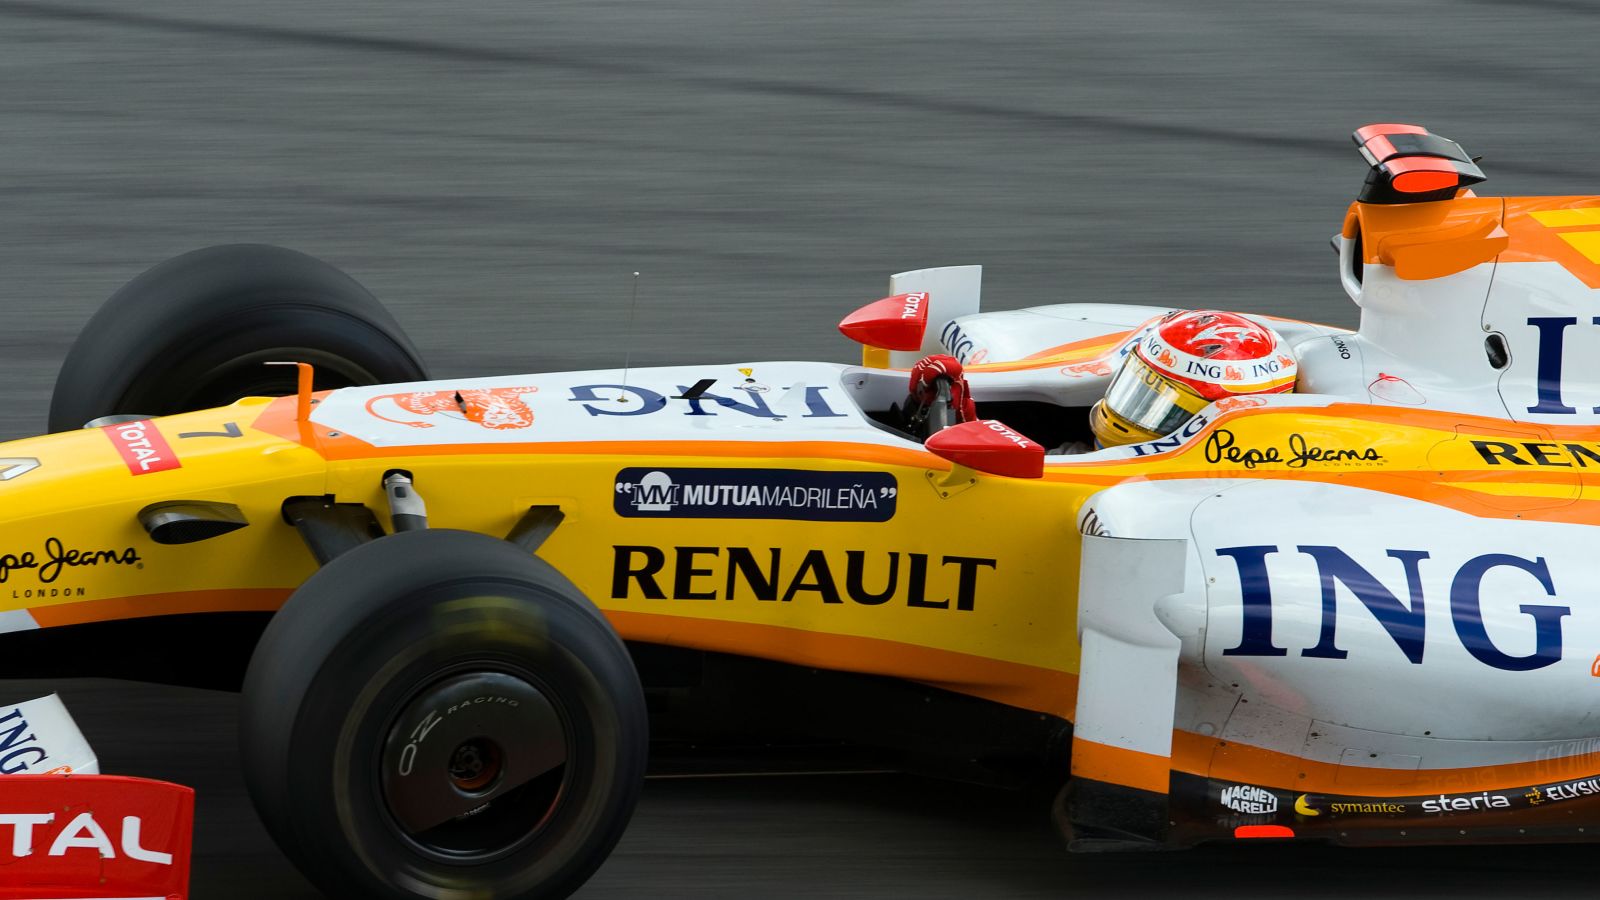 雷诺车手费尔南多·阿隆索在马来西亚大奖赛的最后一个弯道拦截。雪邦,2009年。